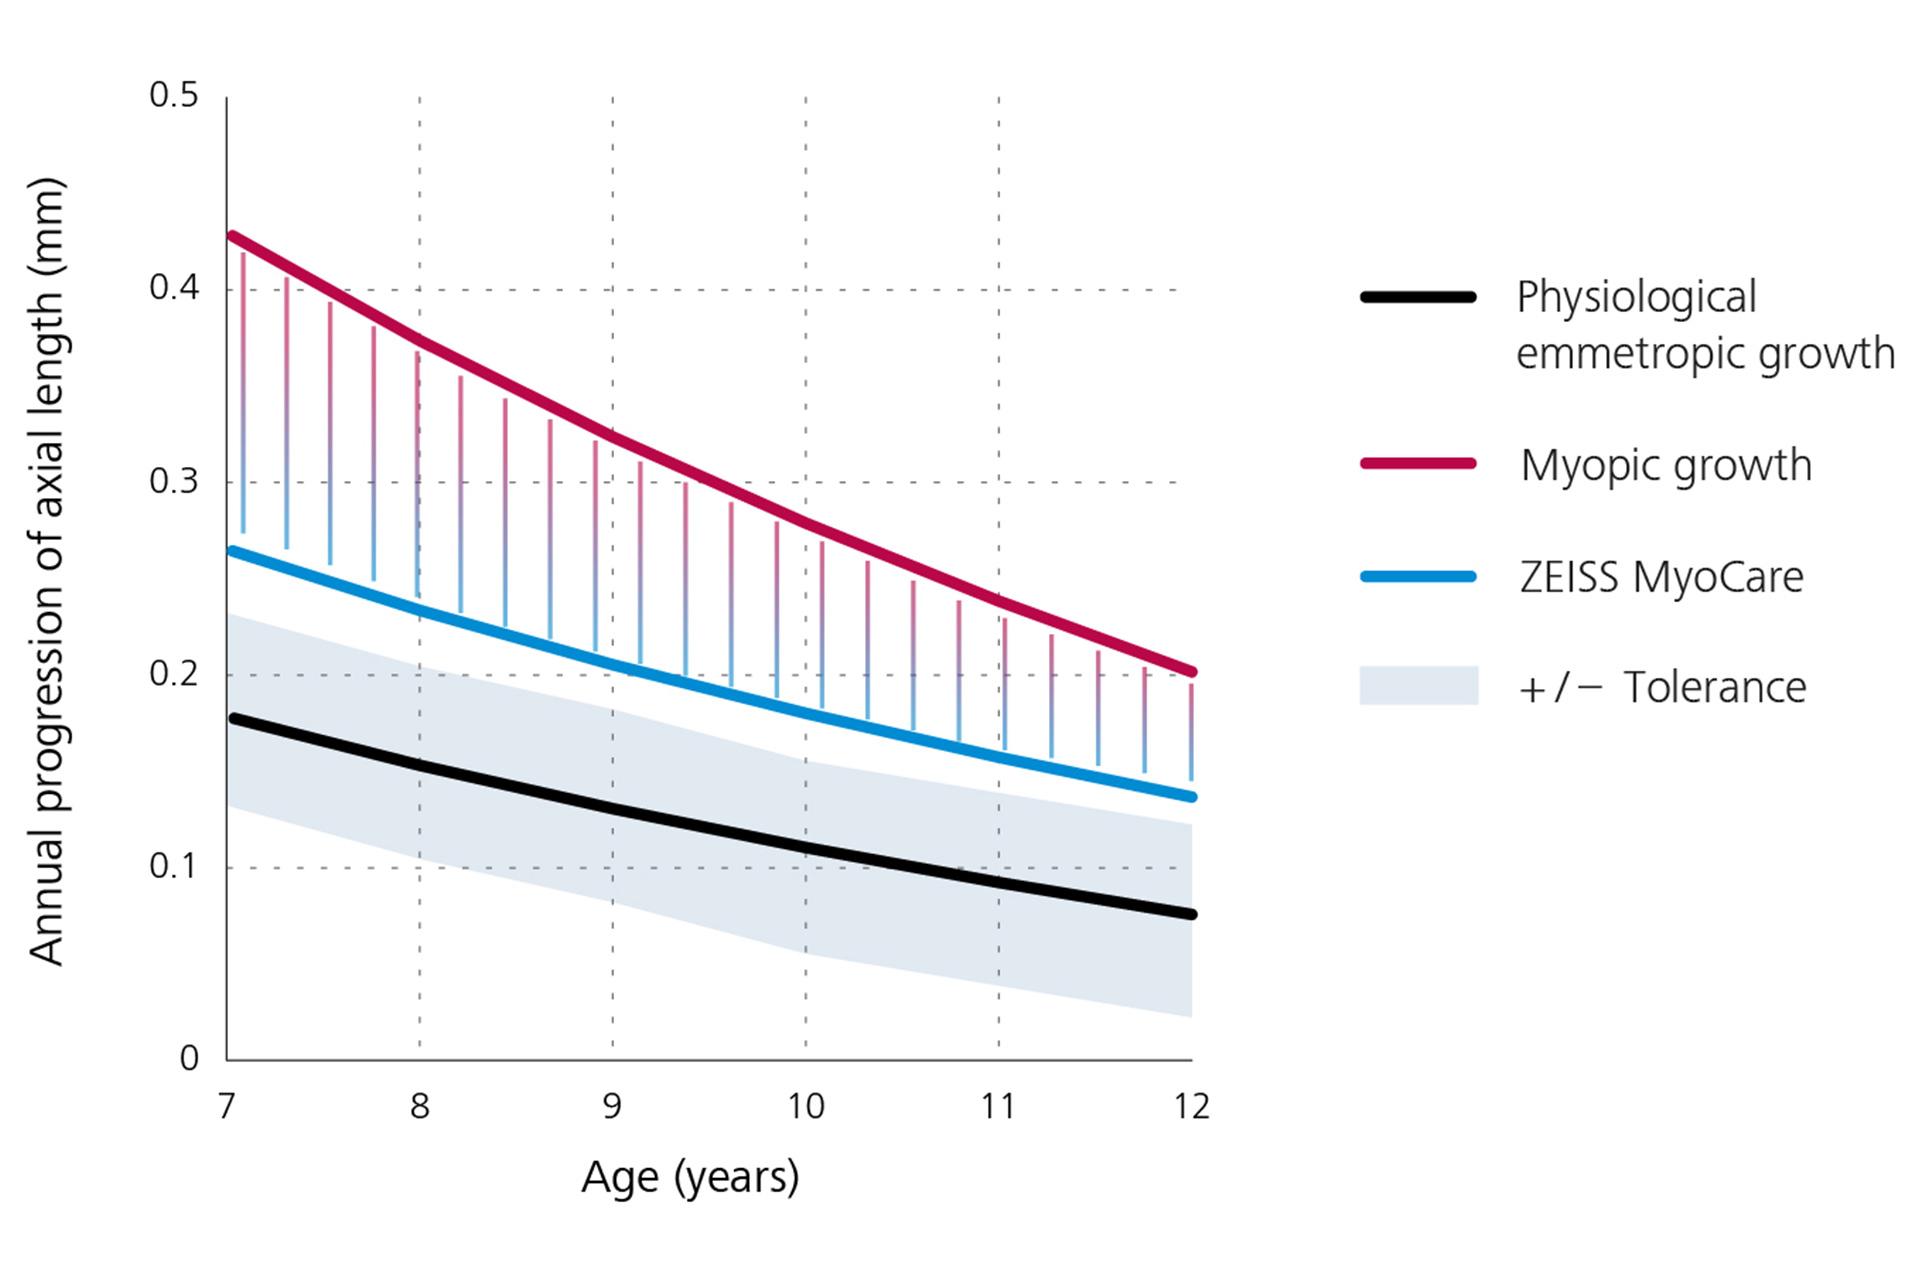 Ett linjediagram som visar årlig progression för axiell längd med emmetropisk tillväxt i svart längst ner, myopisk tillväxt i rött längst upp, och resultaten för ZEISS MyoCare-glas i blått i mitten. Utifrån detta diagram kan härledas att myopiprogressionen ligger under myopitillväxtkurvan om ZEISS MyoCare-glas används.  